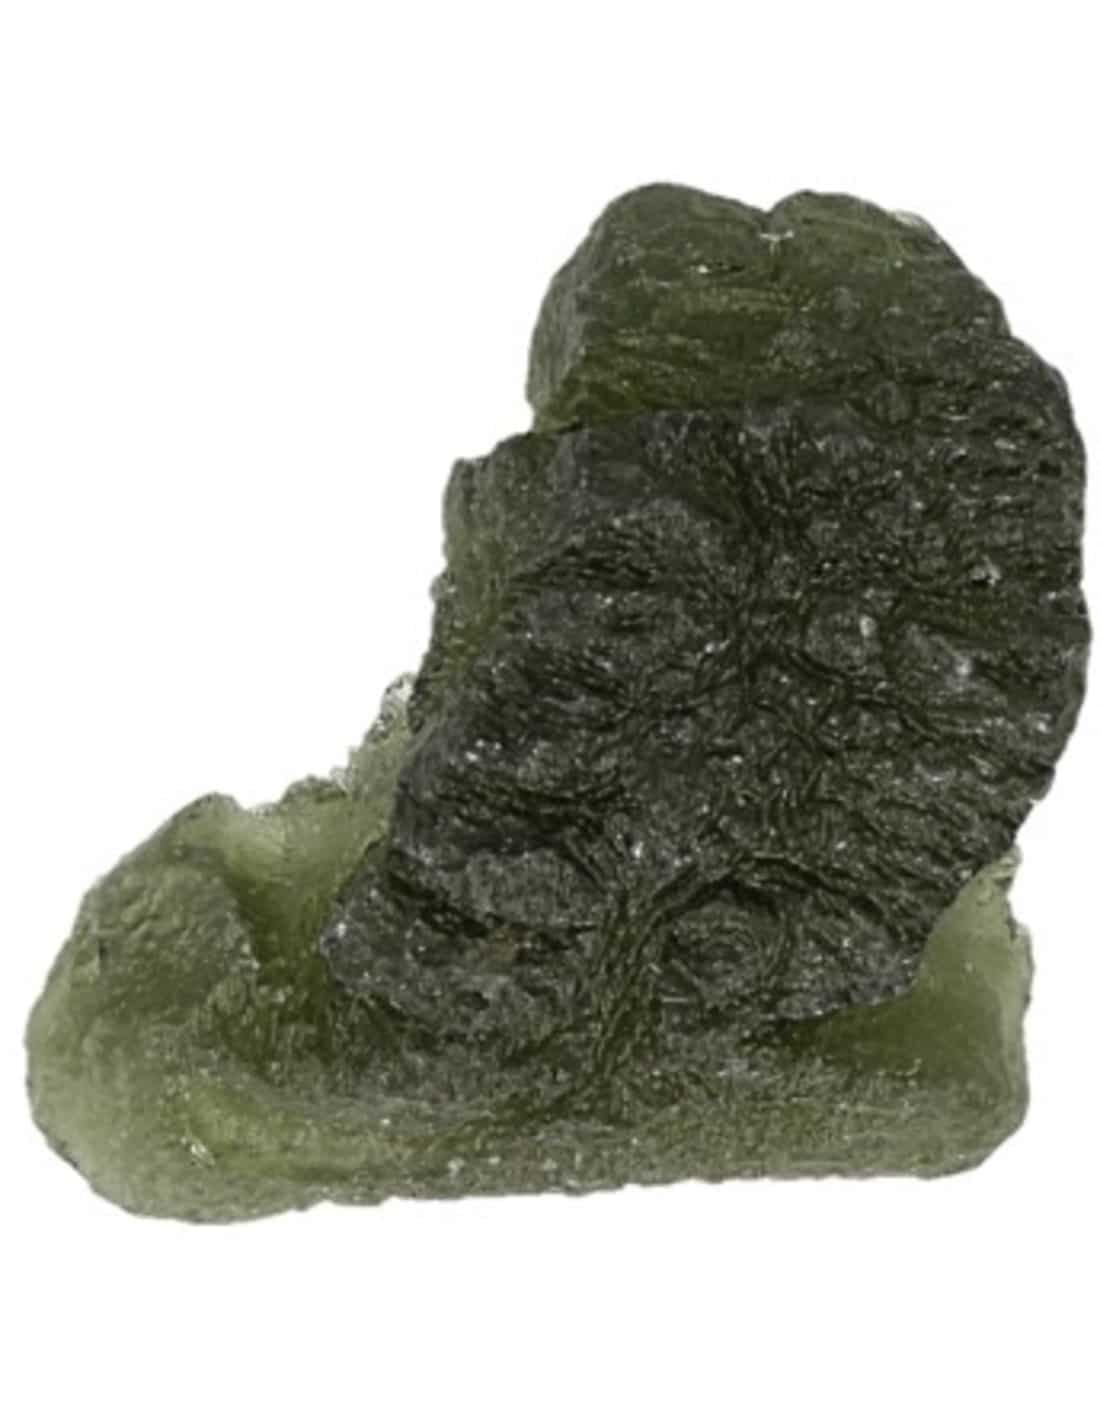 Roher Edelstein Moldavit (7 Gramm) unter Edelsteine & Mineralien - Edelstein Arten - Rohe Edelsteine